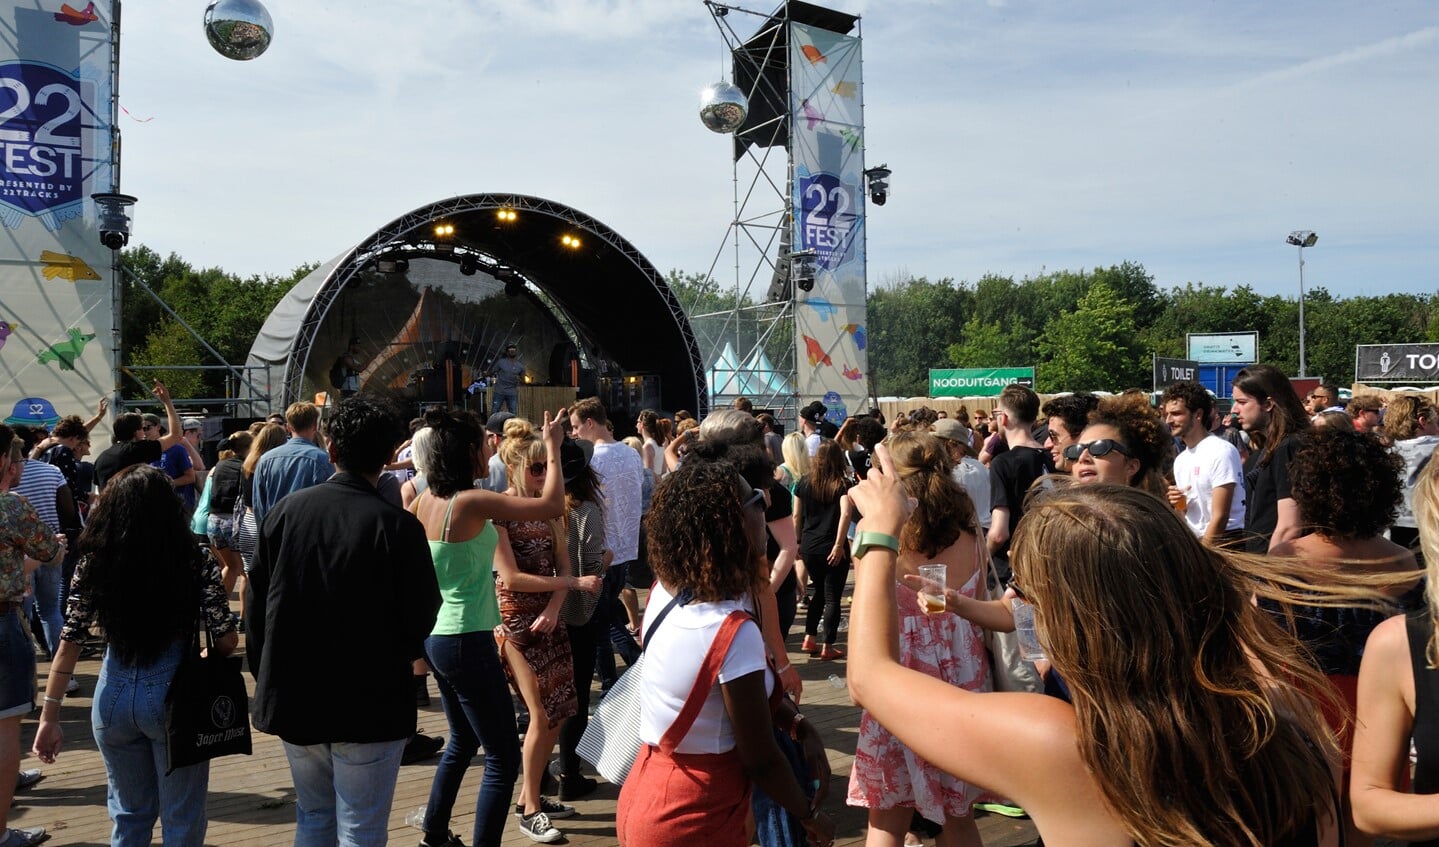 22Fest in 2015; de organisatie meldt dat de volgende editie op 23 juli 2016 in het Diemerbos plaatsvindt. 